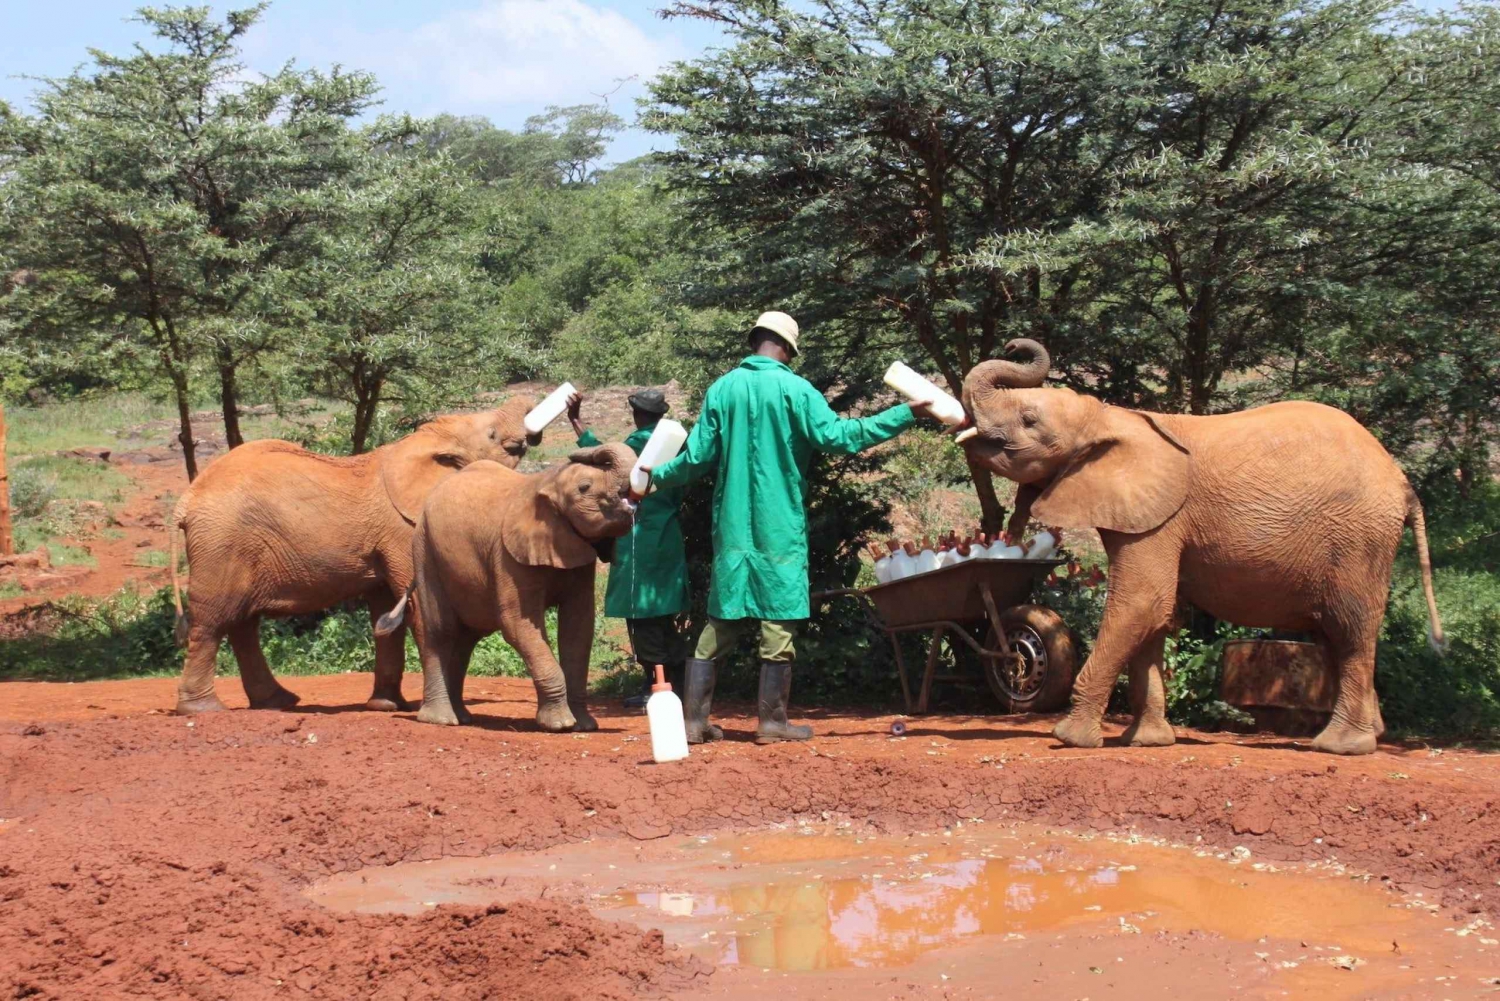 Elephant Orphanage and Bomas of Kenya